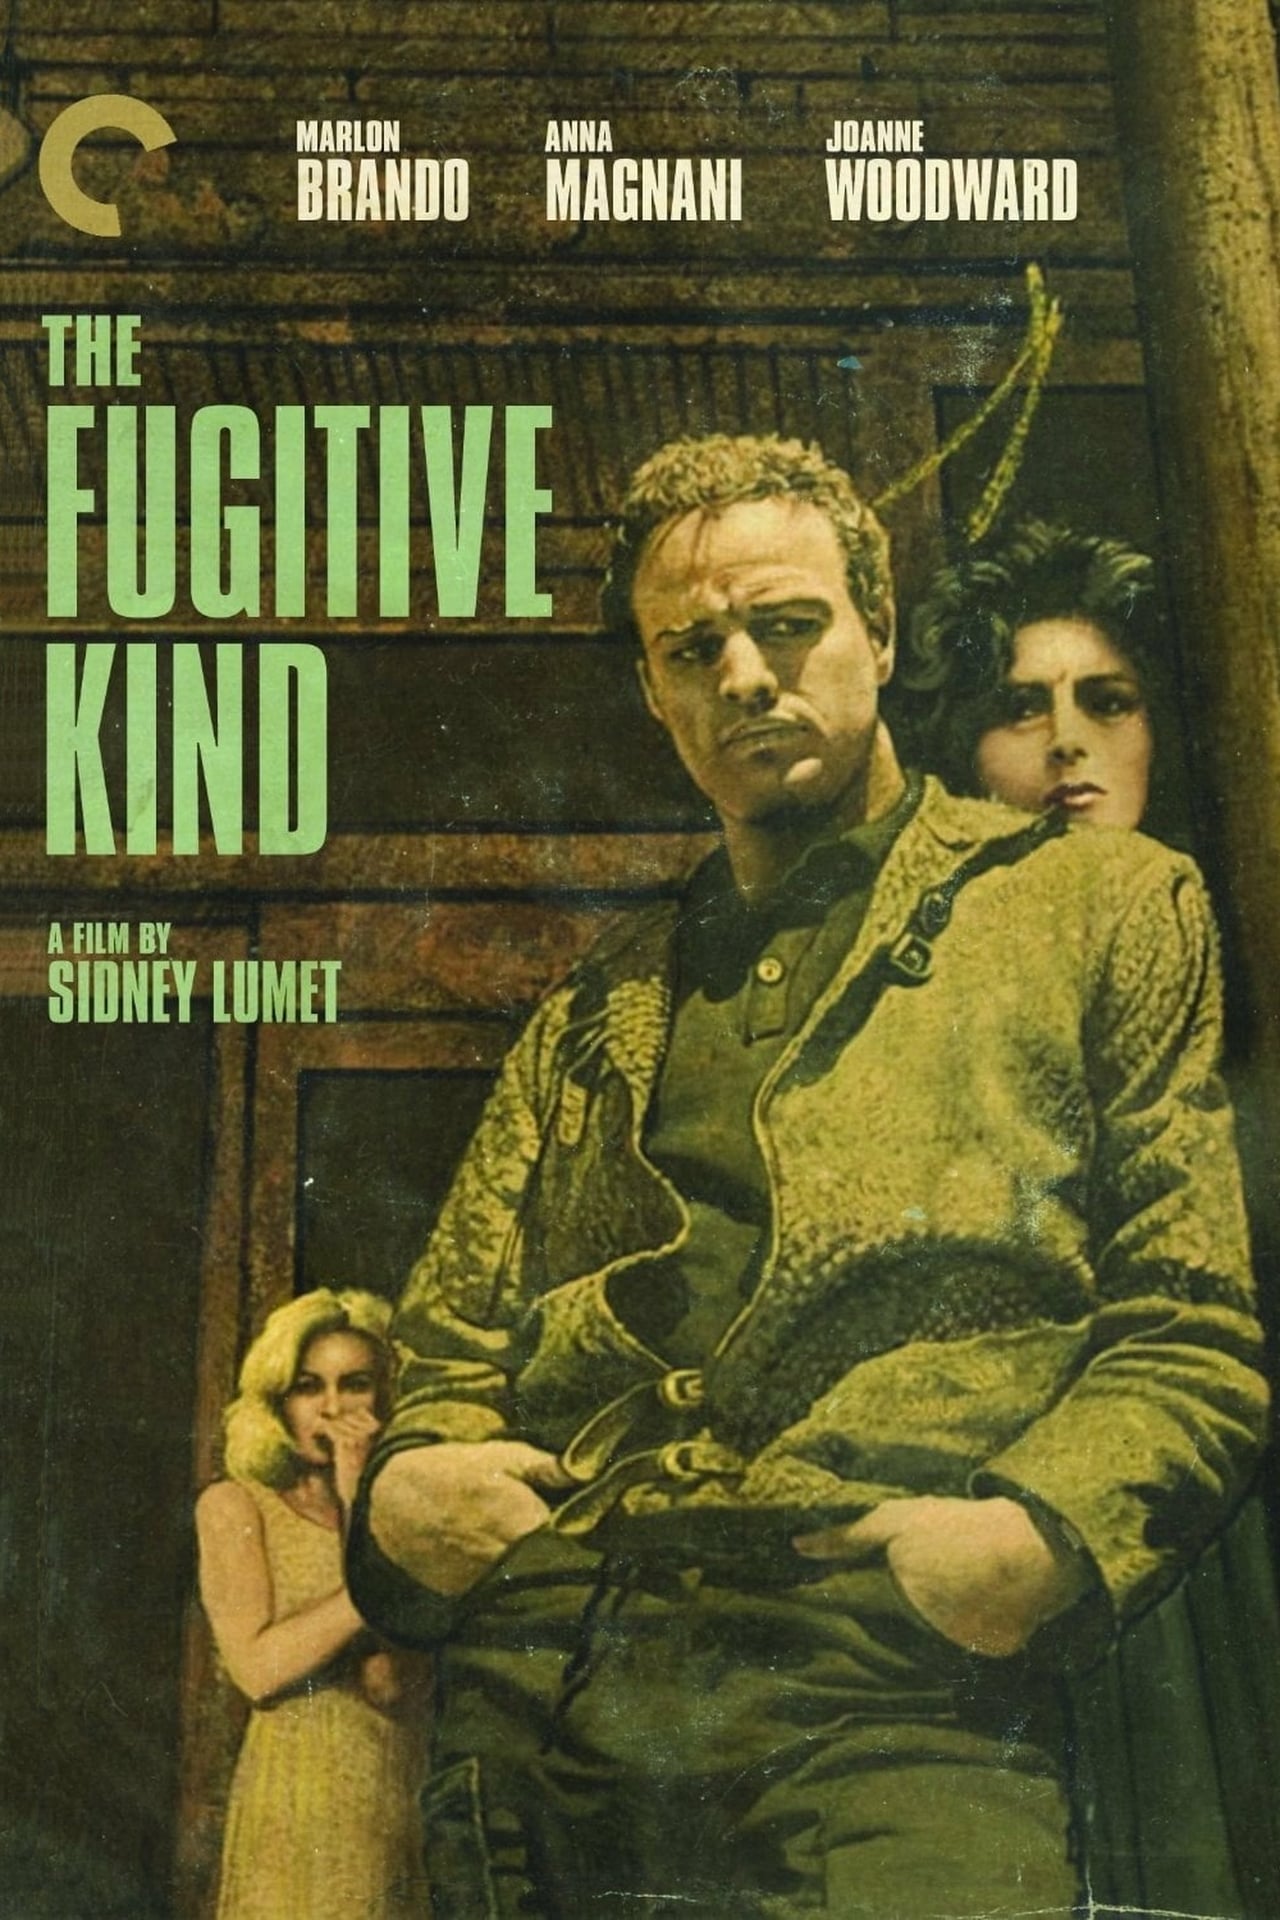 EN - The Fugitive Kind (1960) - MARLON BRANDO